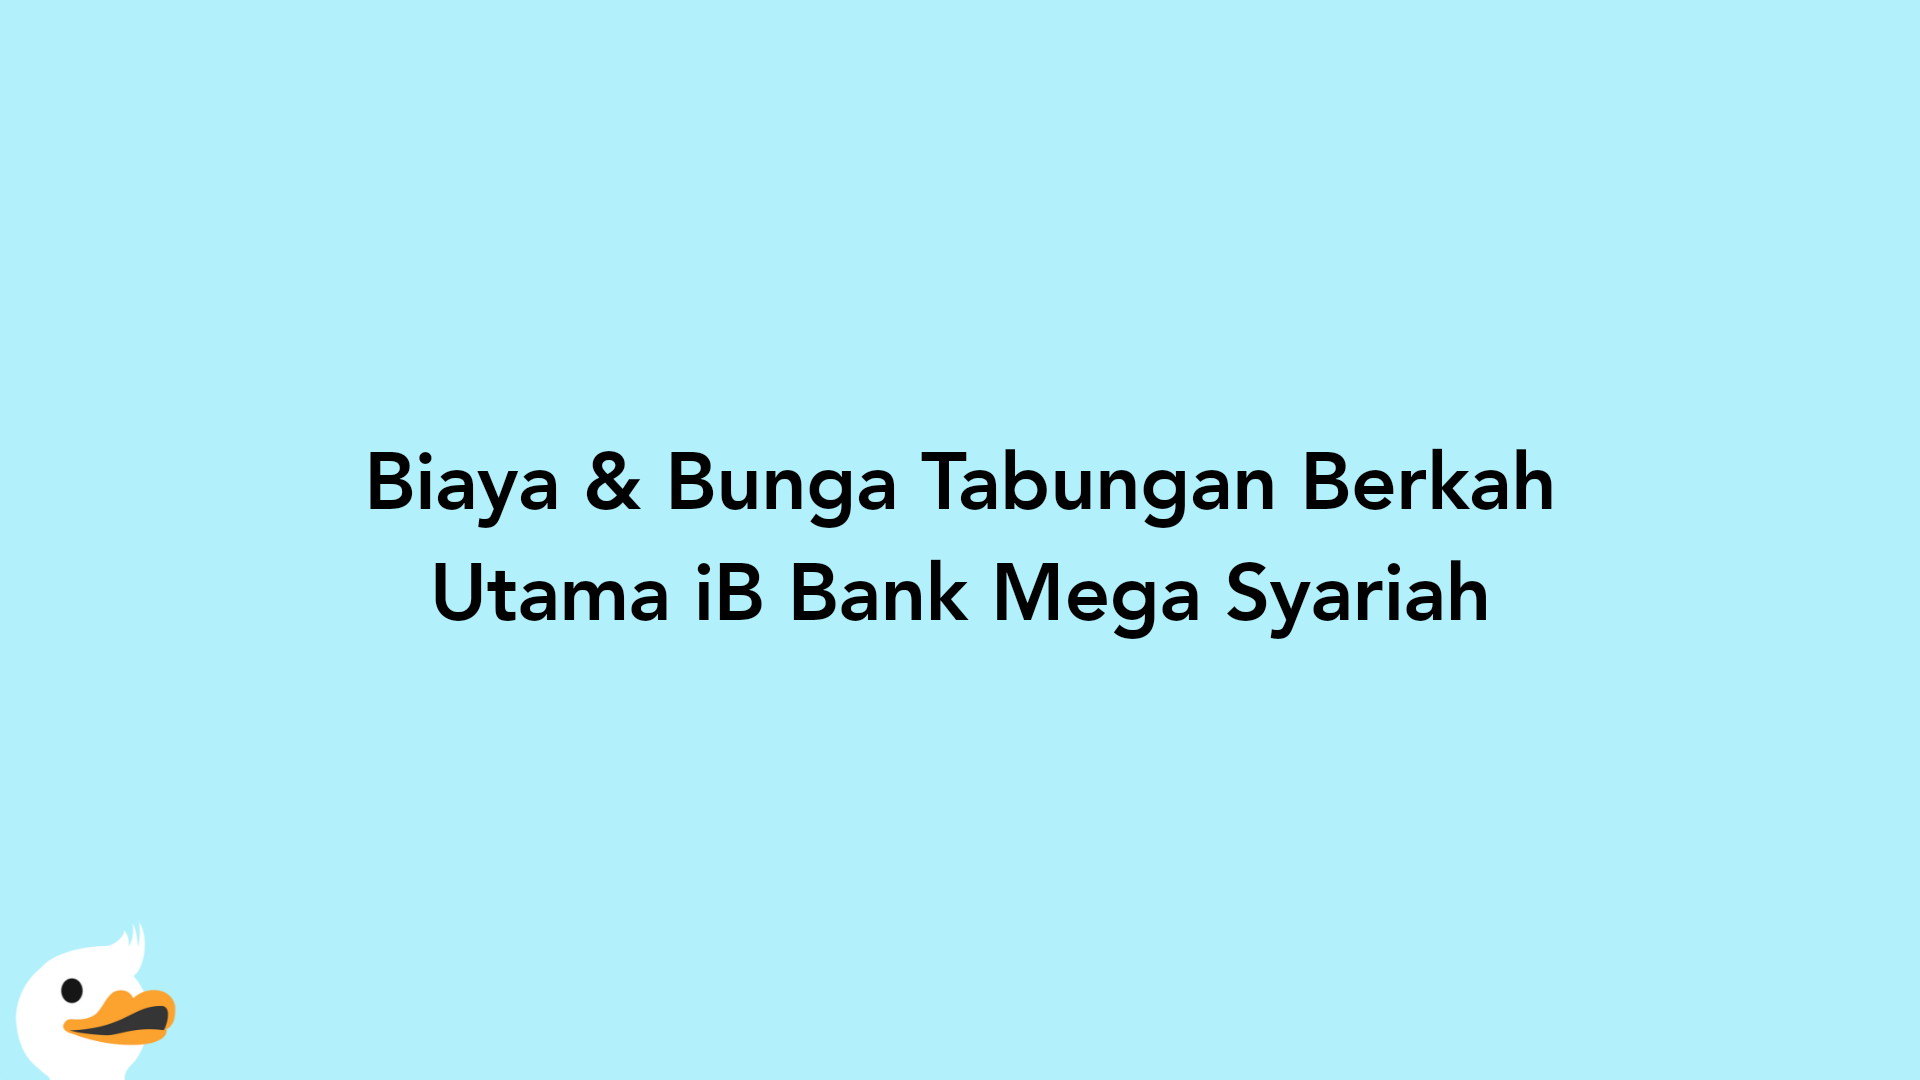 Biaya & Bunga Tabungan Berkah Utama iB Bank Mega Syariah